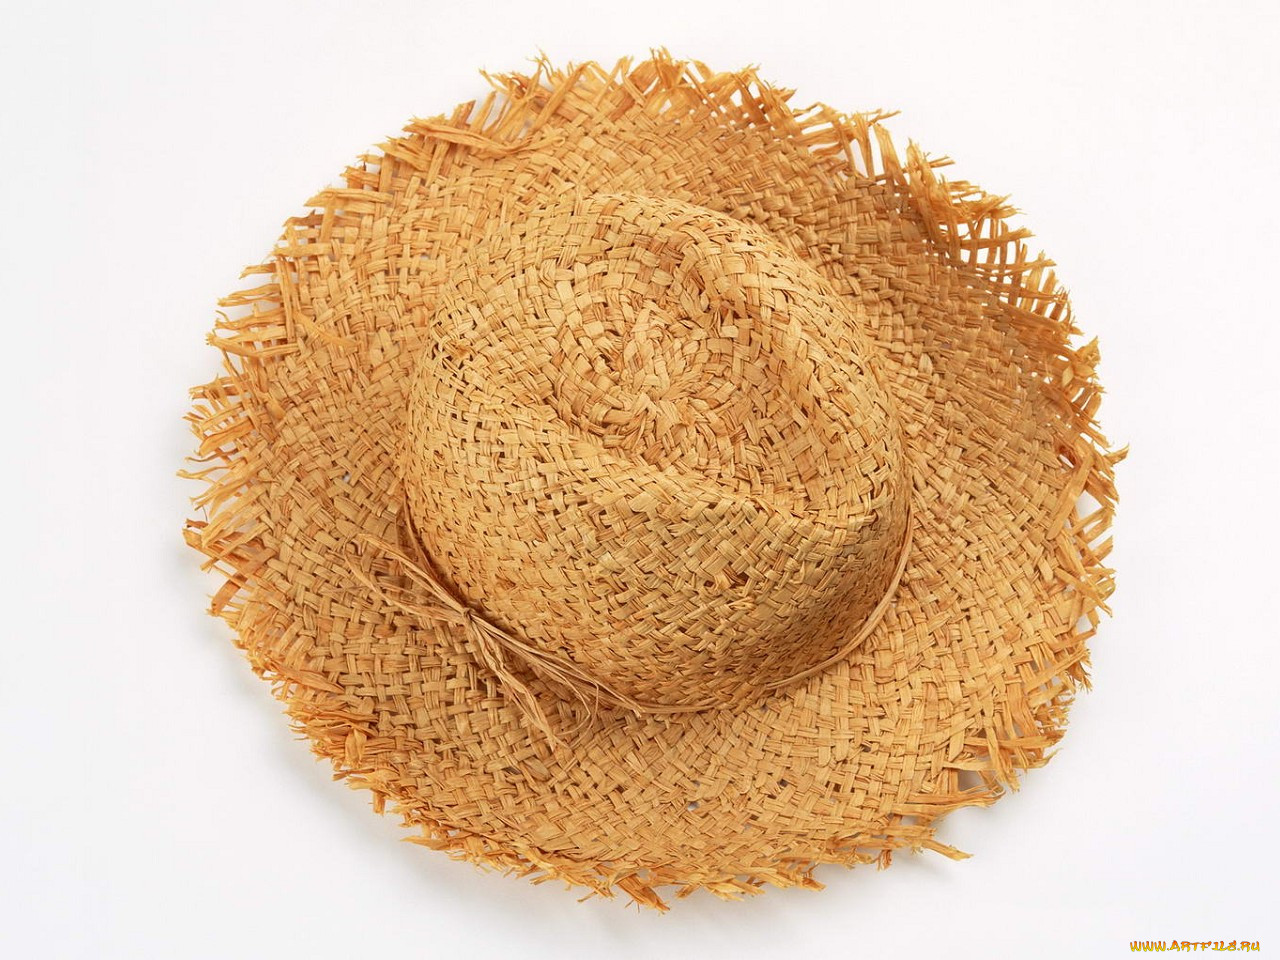 Соломенная шляпа 5. Соломенная шляпа. Шляпка из соломы. Шляпка из соломы соломенная. Соломенная шляпа вид сверху.